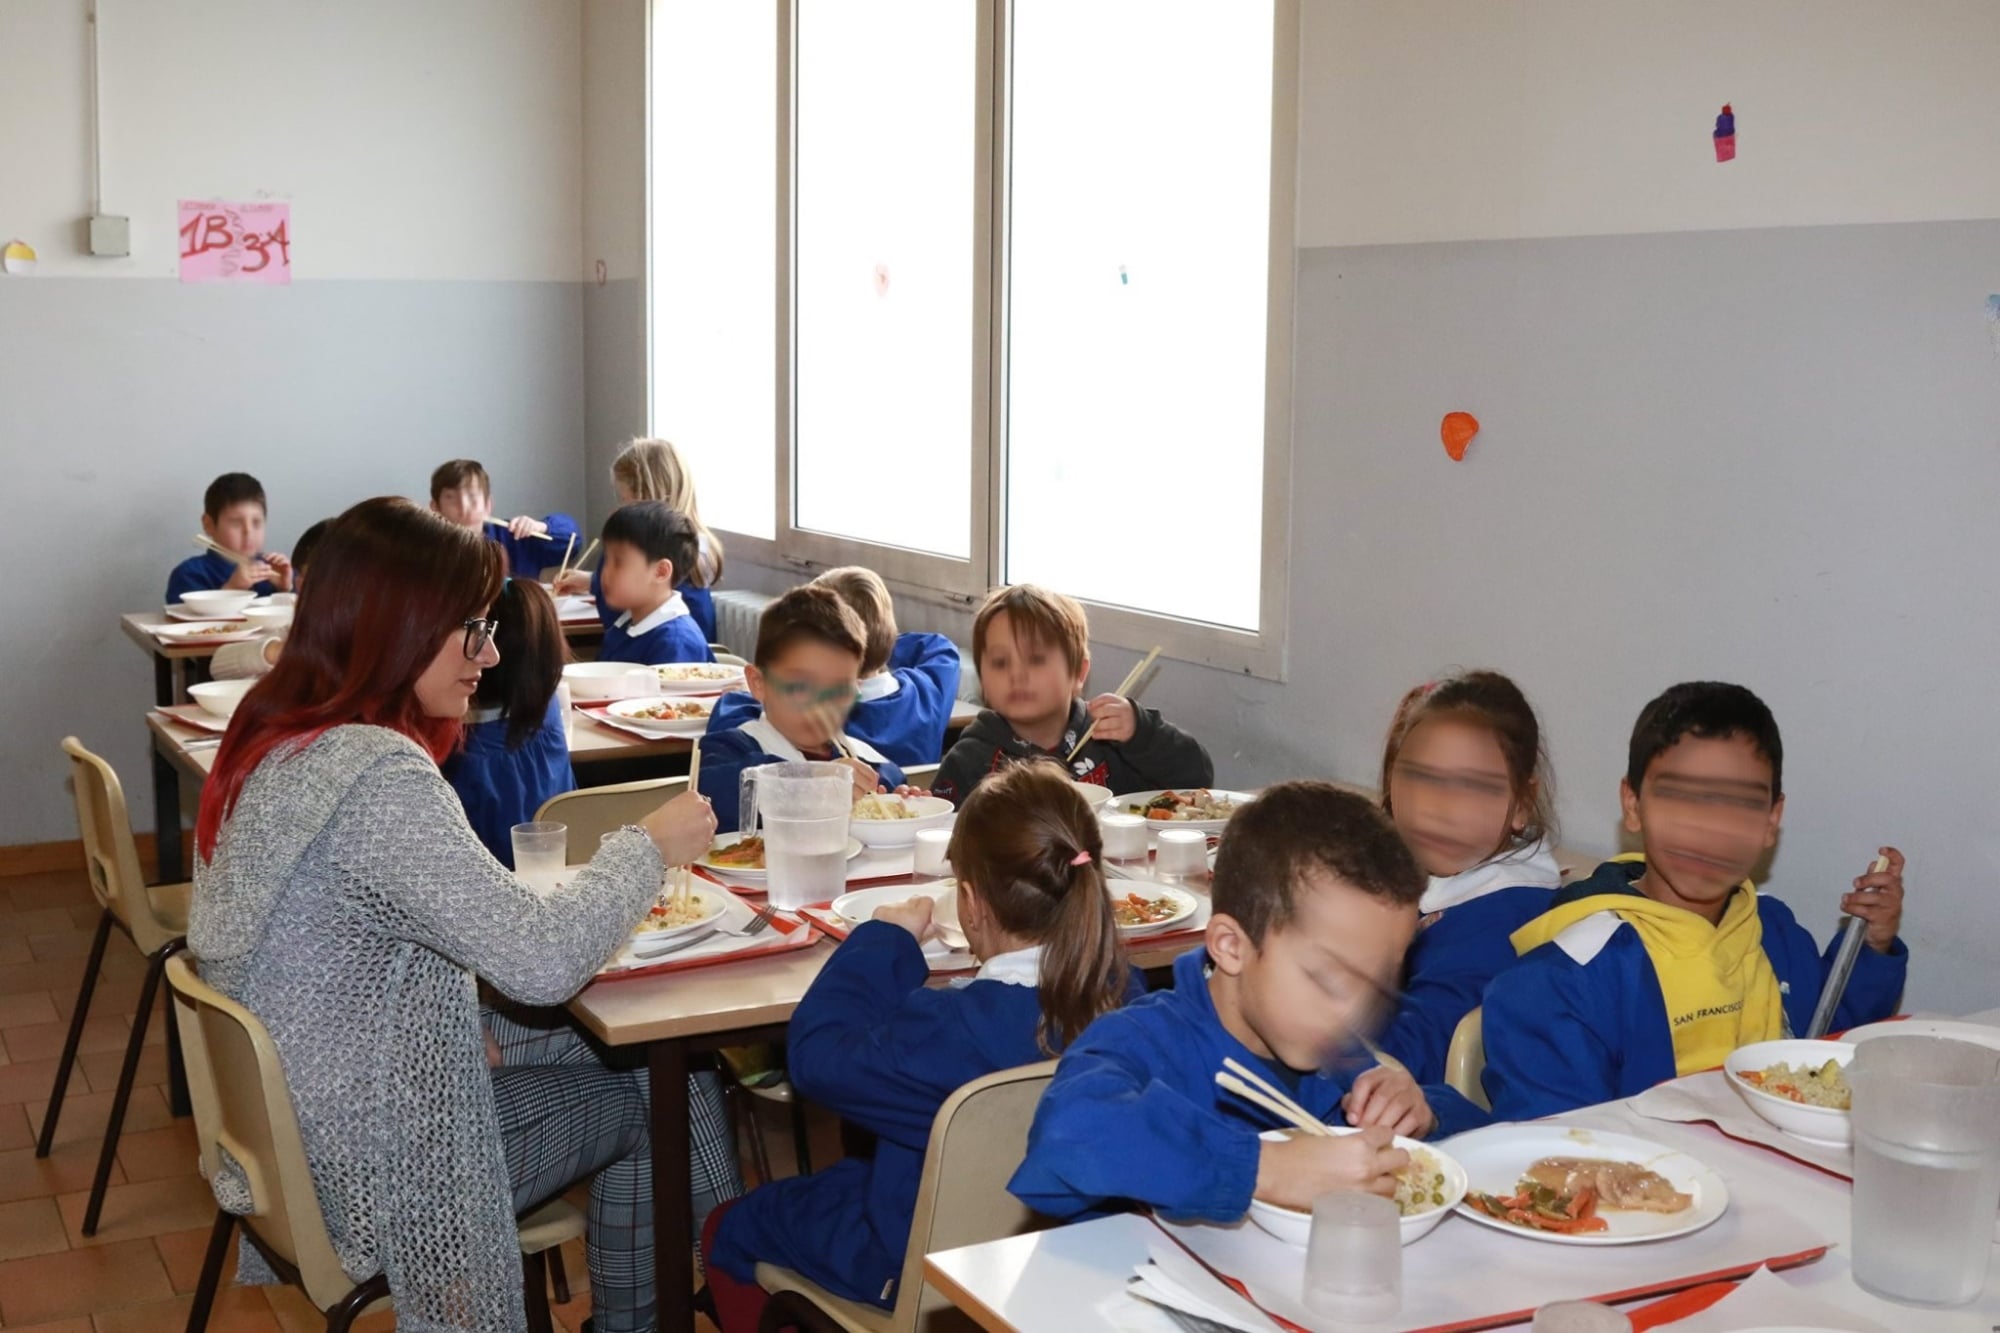 Coronavirus, la solidarietà dei bambini: cibo cinese a mensa